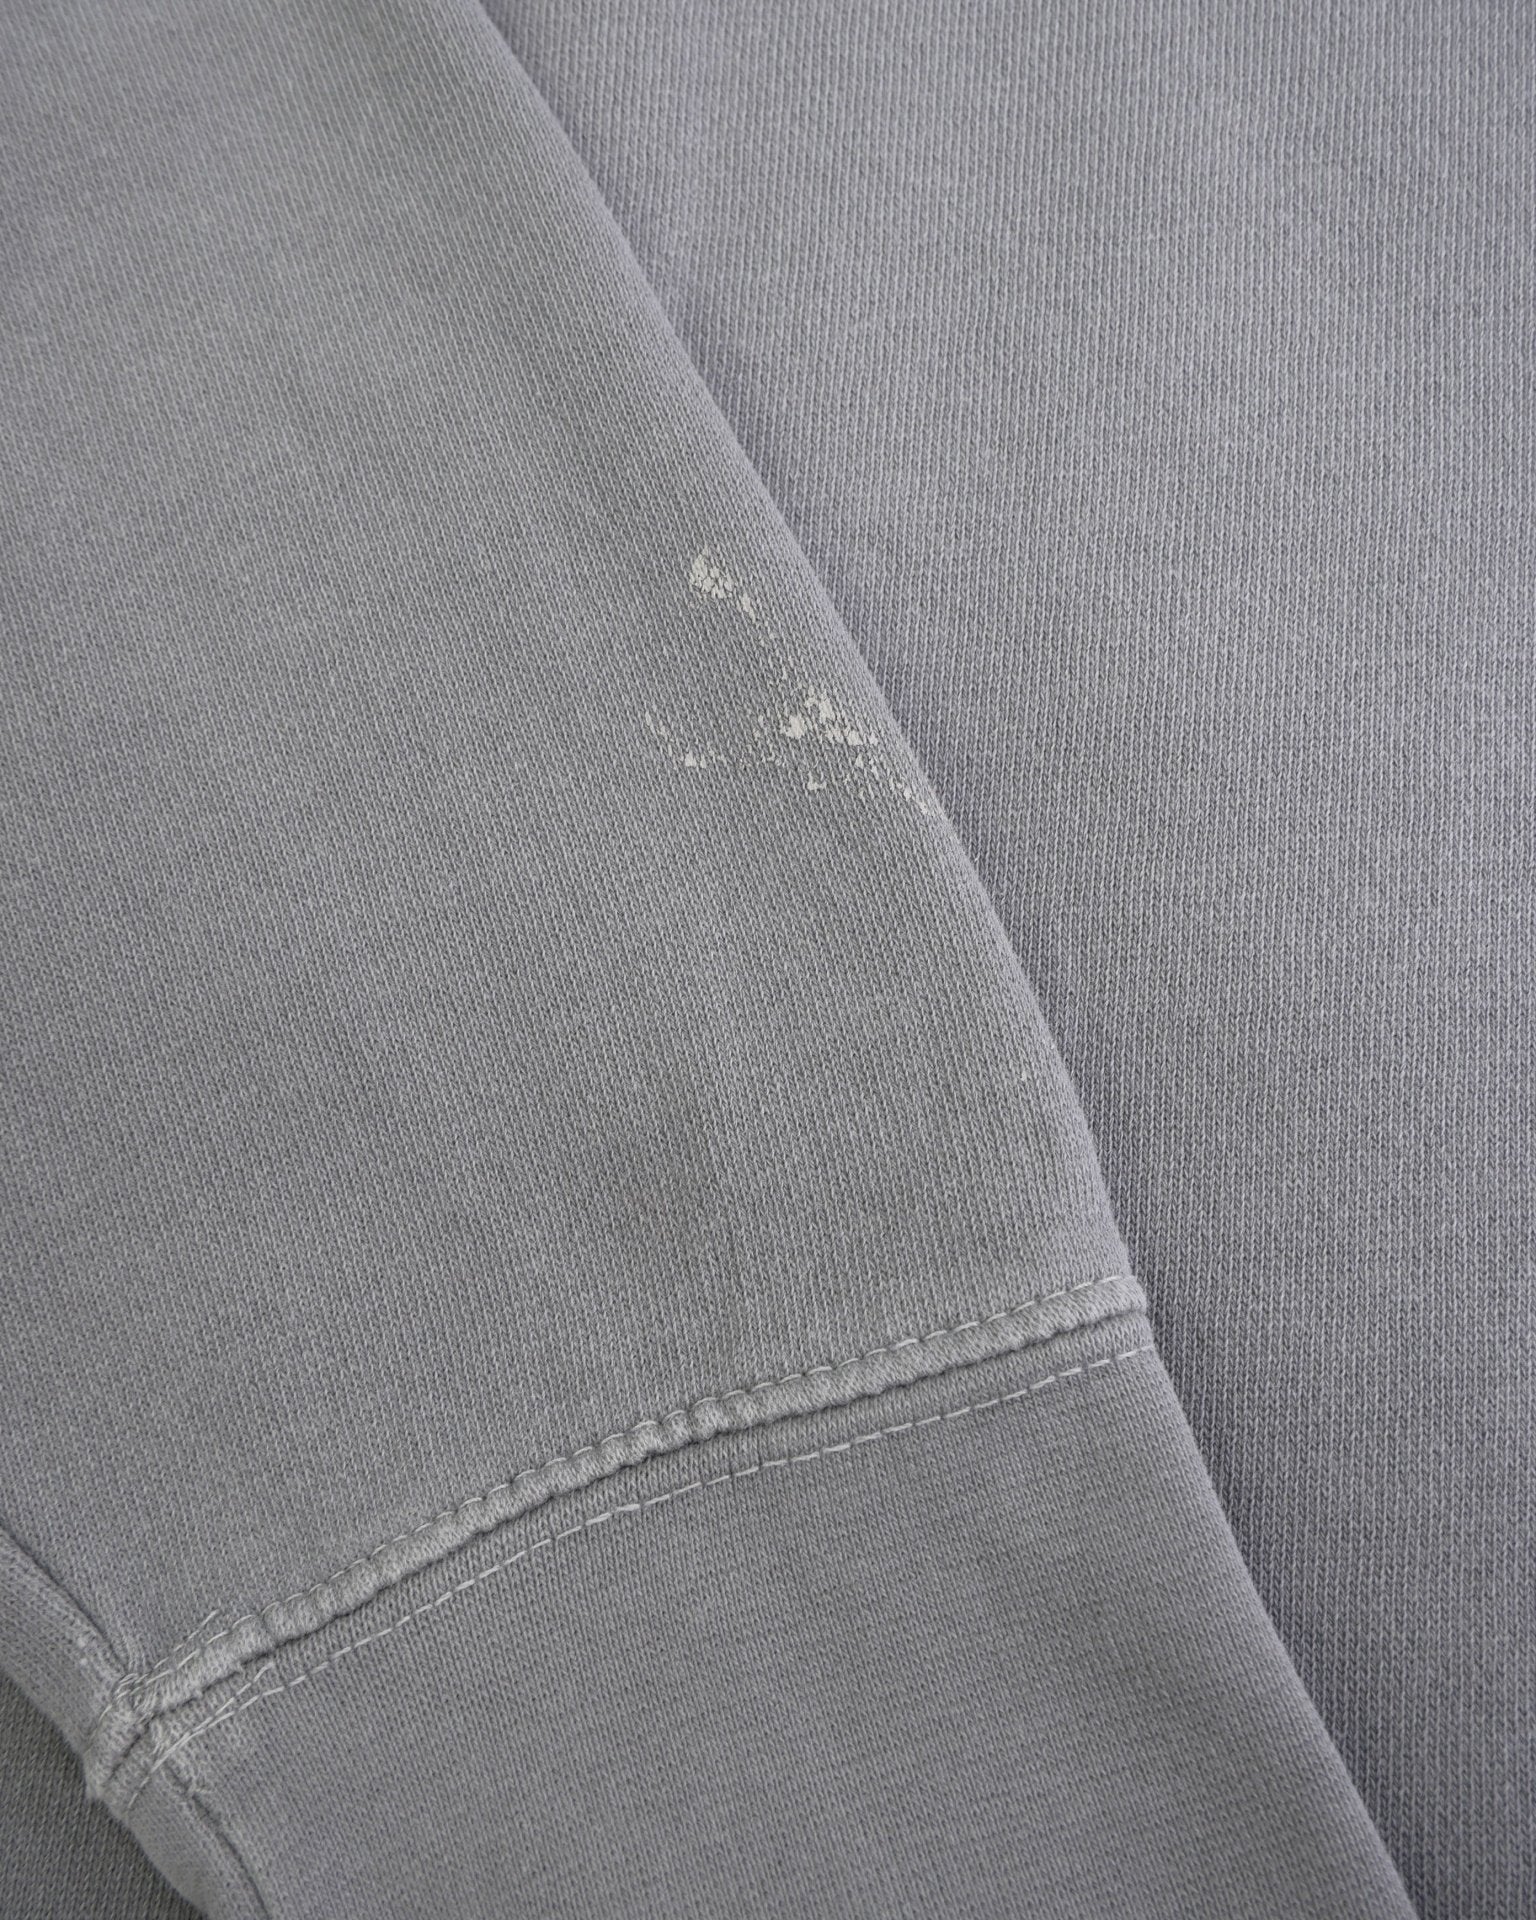 Woodsie 2015 printed Logo grey Sweater - Peeces